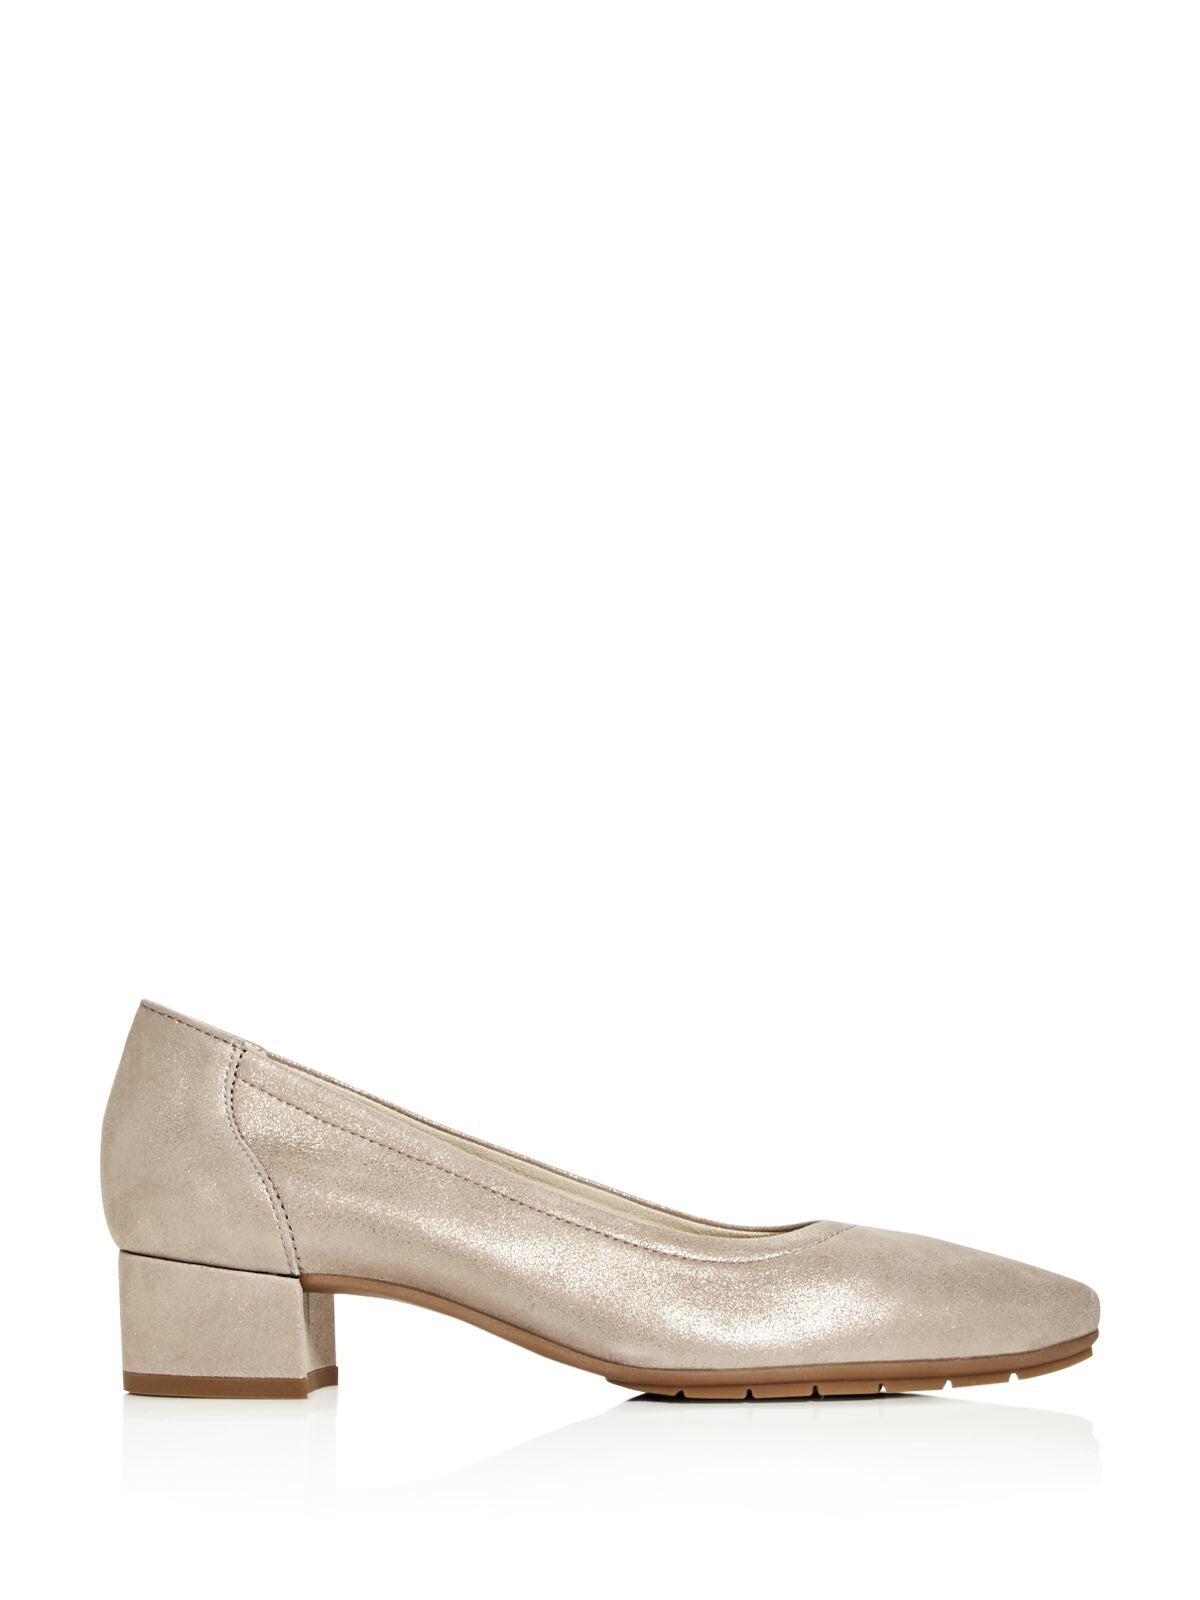 PAUL GREEN Womens Champagne Beige Metallic Padded Cozette Almond Toe Block Heel Slip On Leather Dress Heels Shoes 5.5